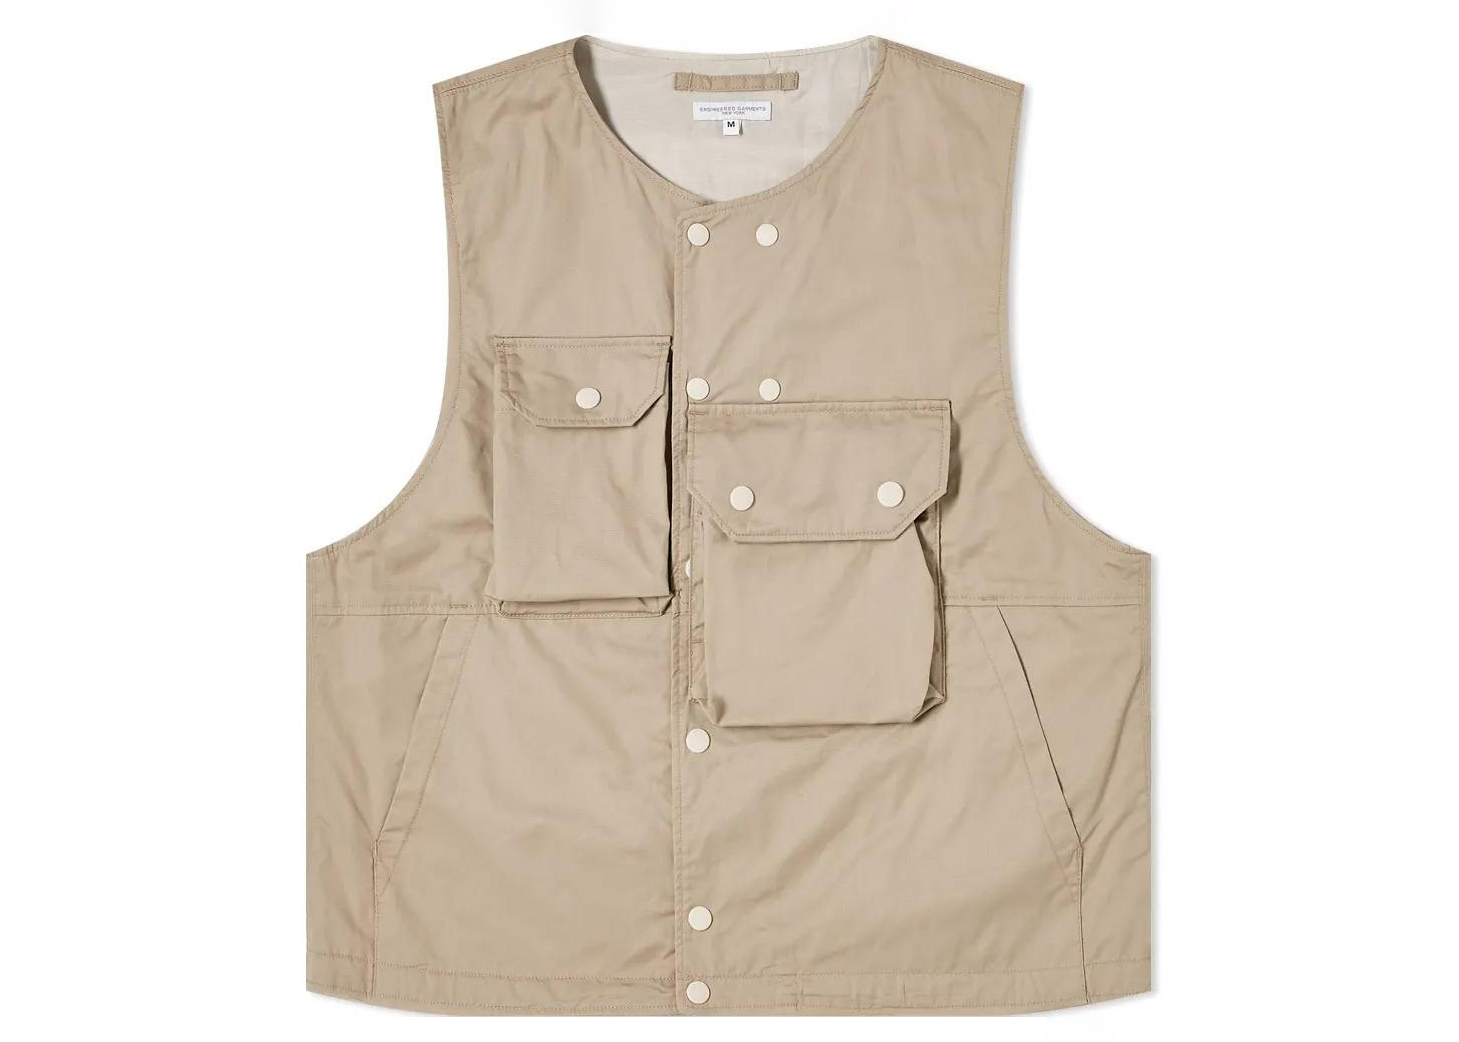 買取公式engineered garments cover vest M /// needles nigel cabourn sassafras ブルーナボインが好きな方へ パンツ シャツ ジャケット Mサイズ